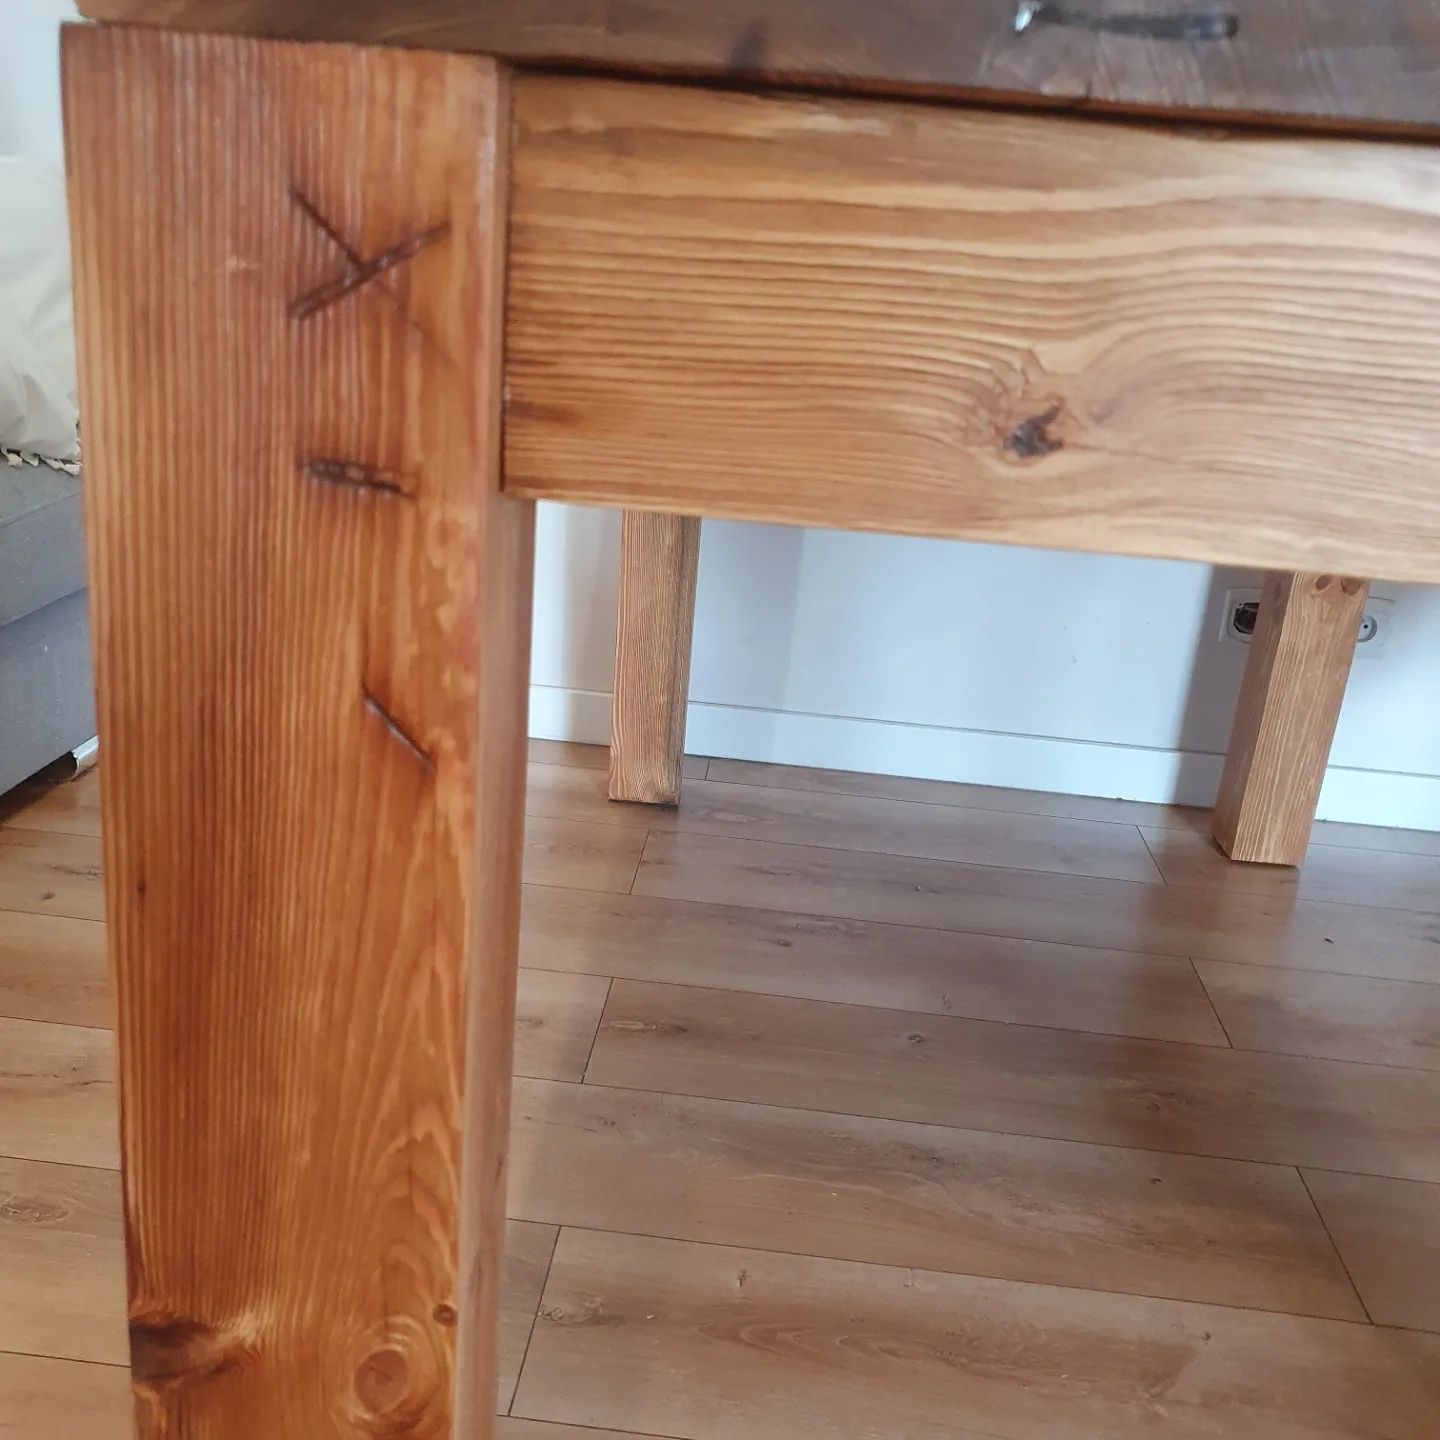 Stół ze starego drewna